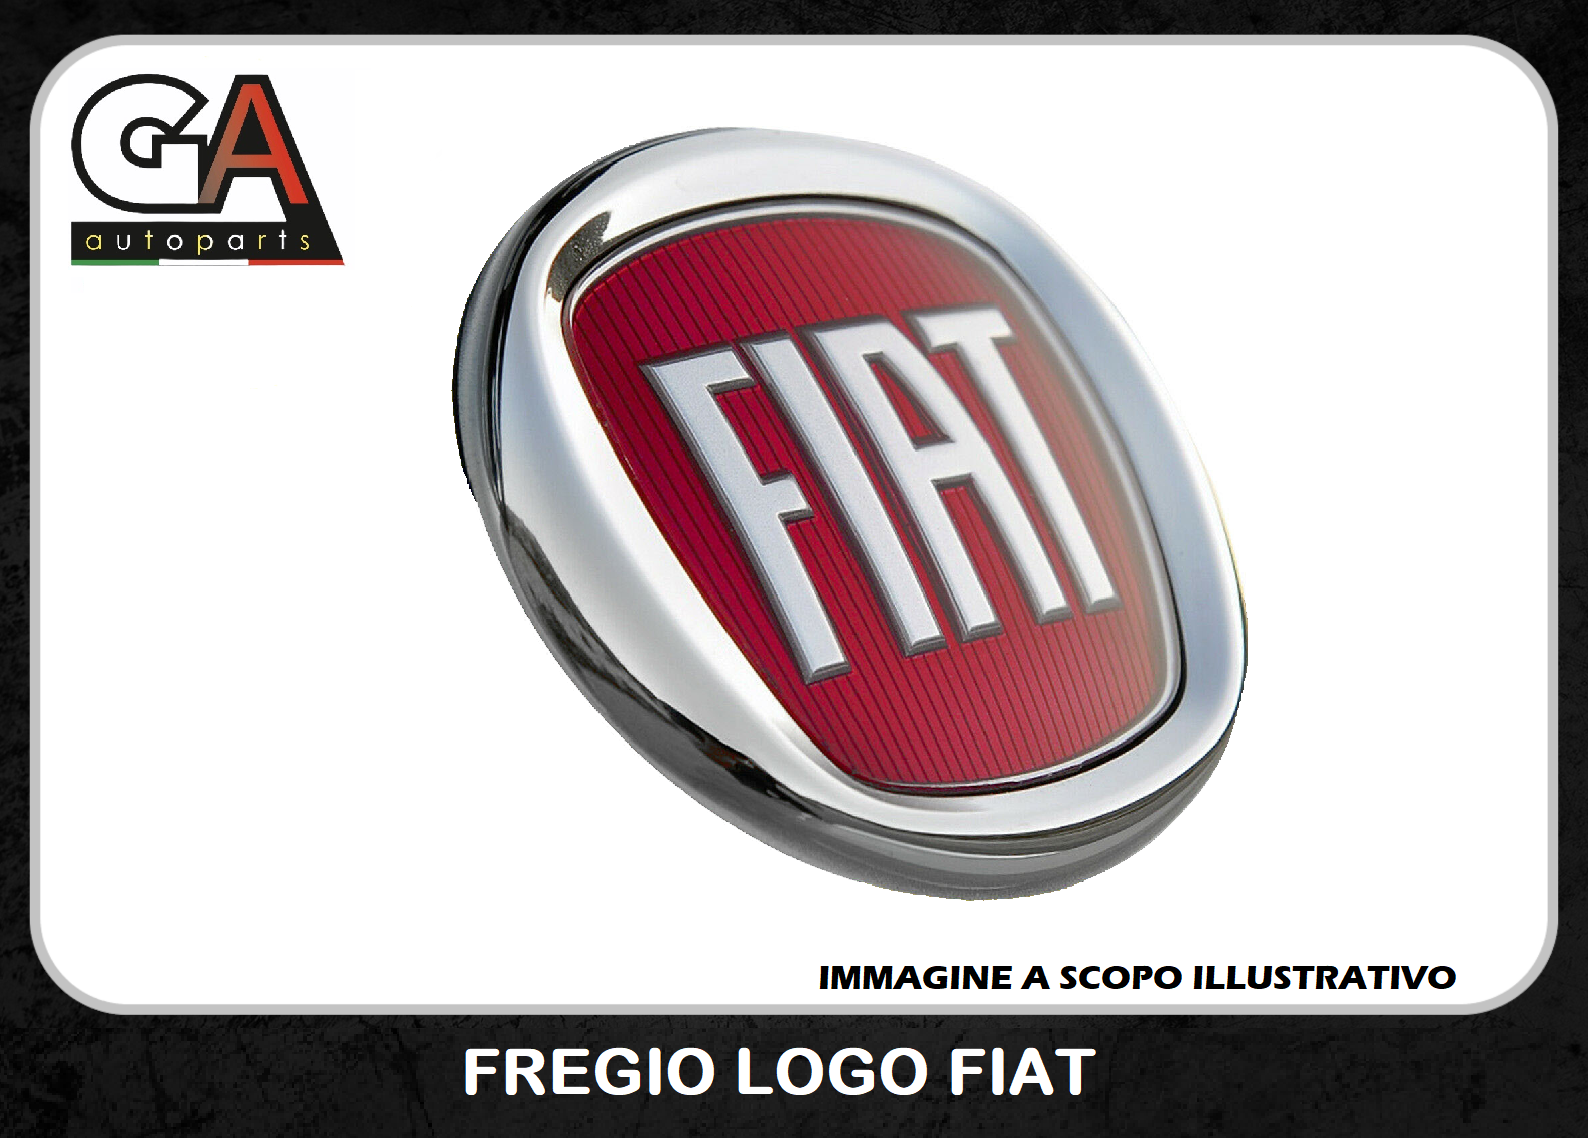 Fregio stemma logo Fiat Anteriore 500 Grande Punto Panda Rosso Ø95mm da  2007 - Ricambi Auto GautopartsProdotto